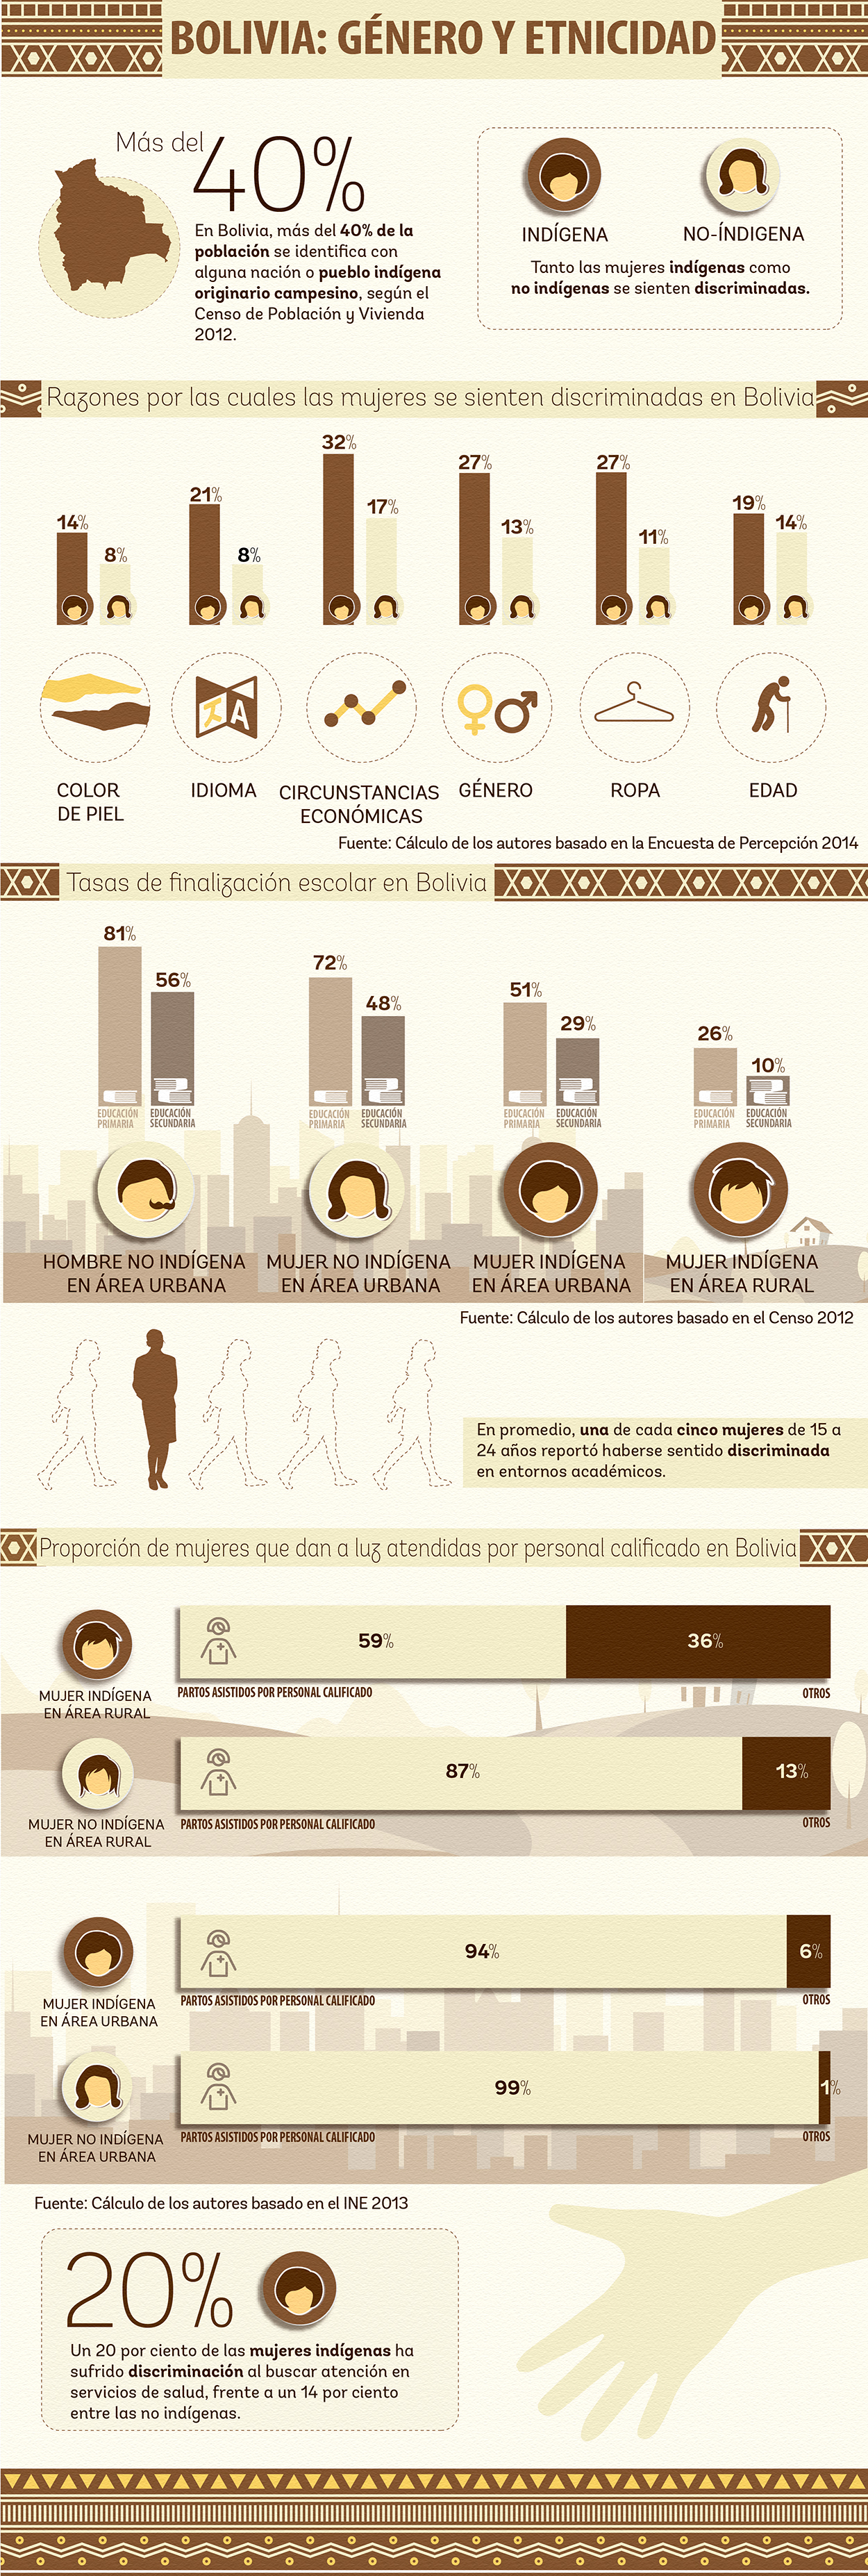 Bolivia: Género y Etnicidad